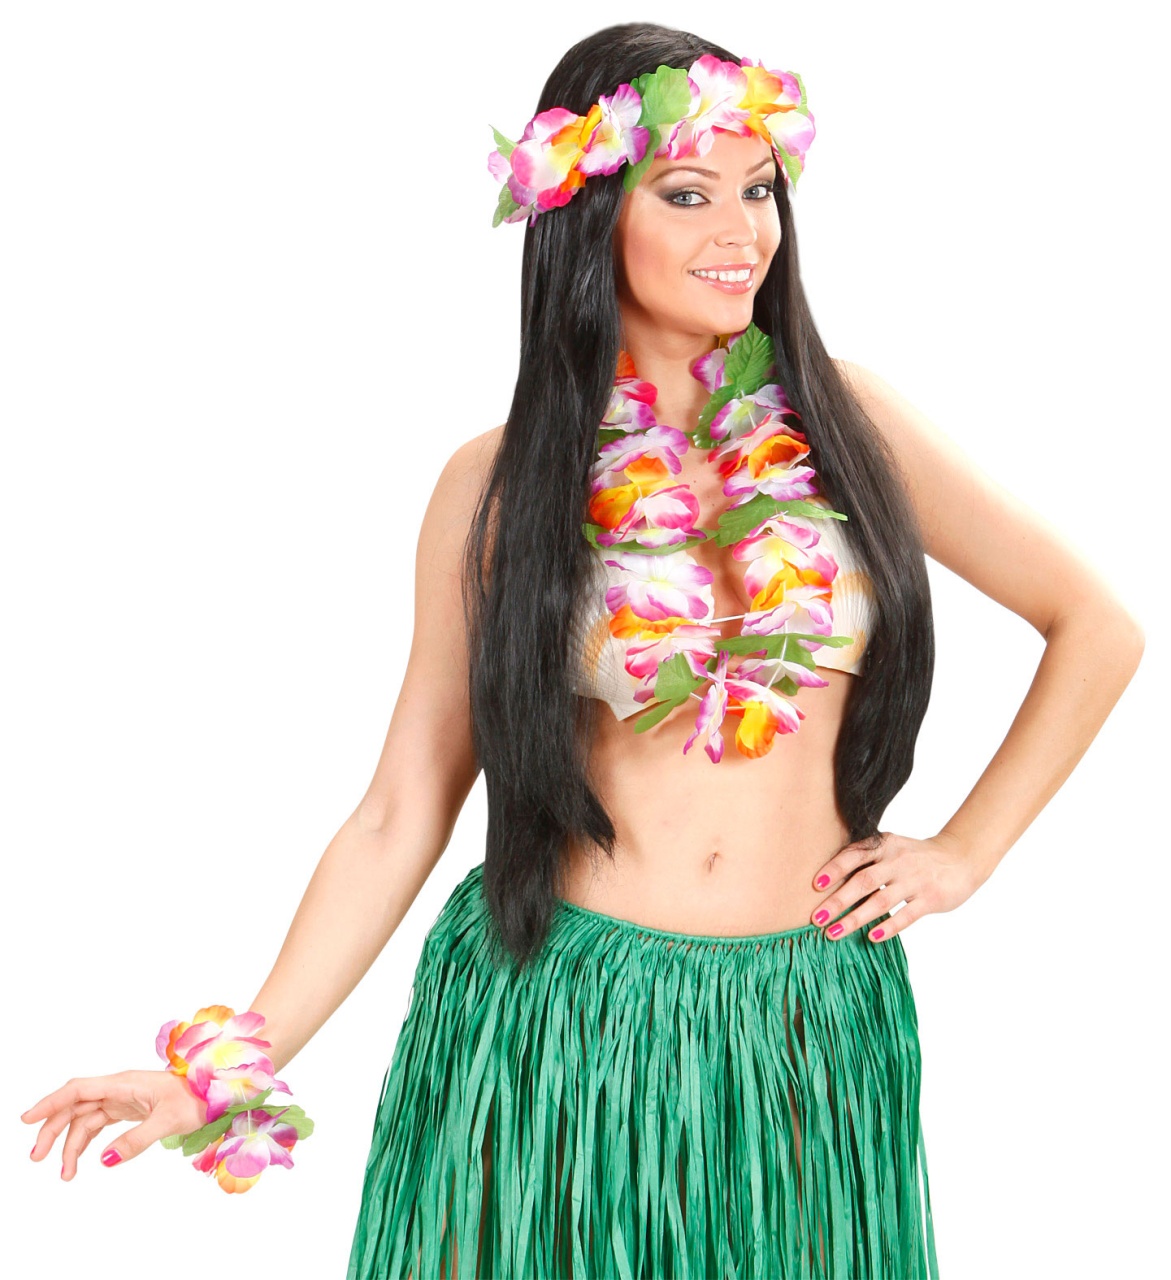 Kostüm-Zubehör Hawaiianische Maui Kette und Haarreif